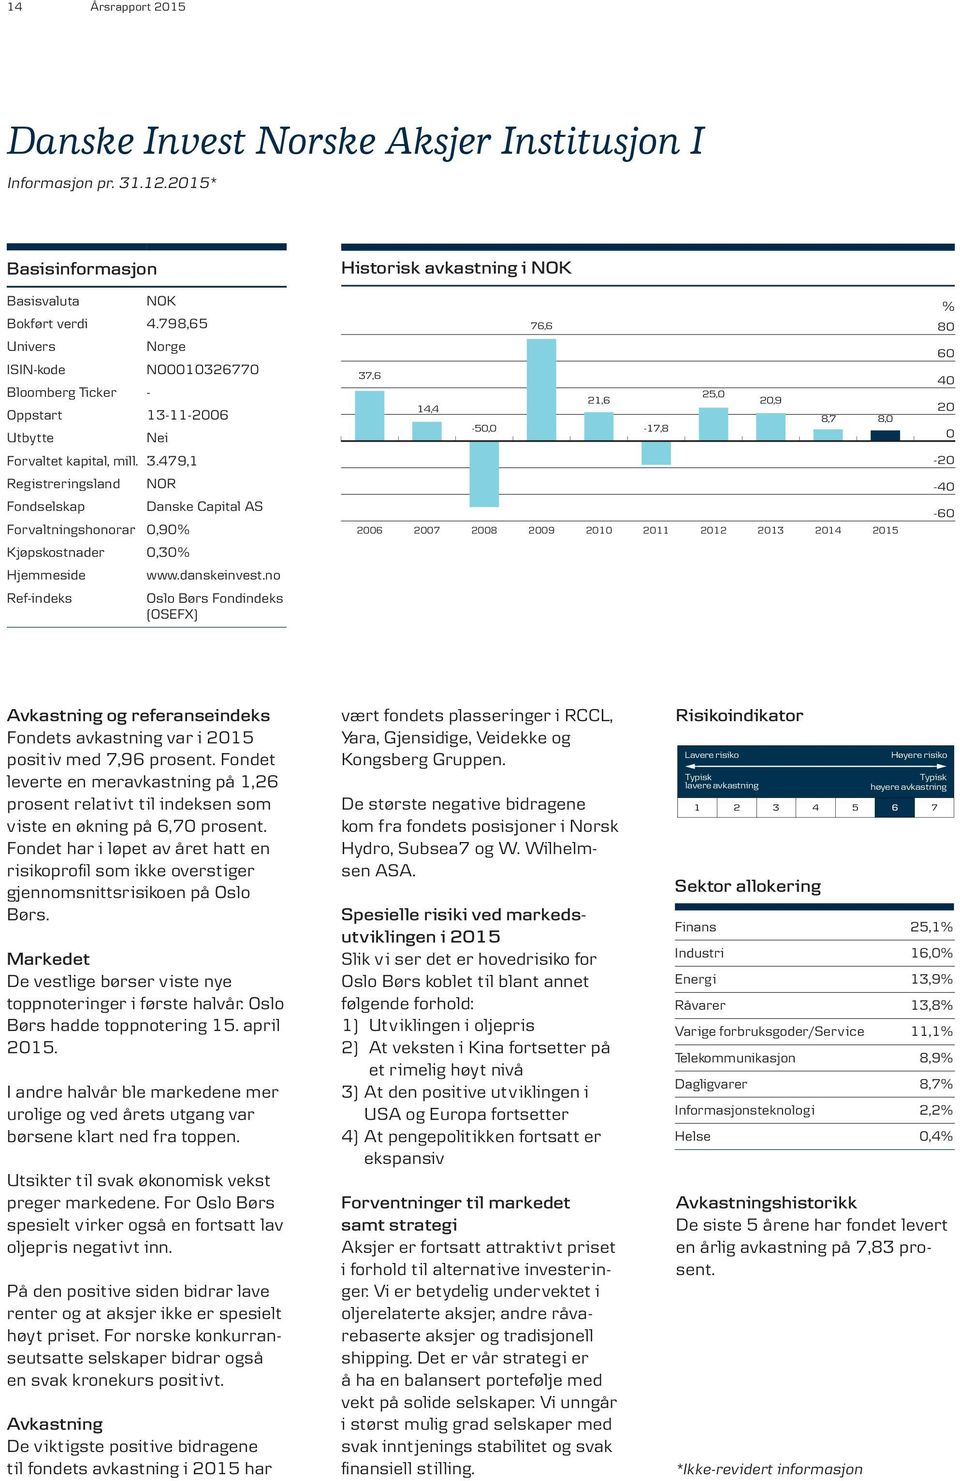 479,1 Registreringsland Fondselskap NOR Forvaltningshonorar 0,90% Kjøpskostnader 0,30% Hjemmeside Ref-indeks Danske Capital AS www.danskeinvest.